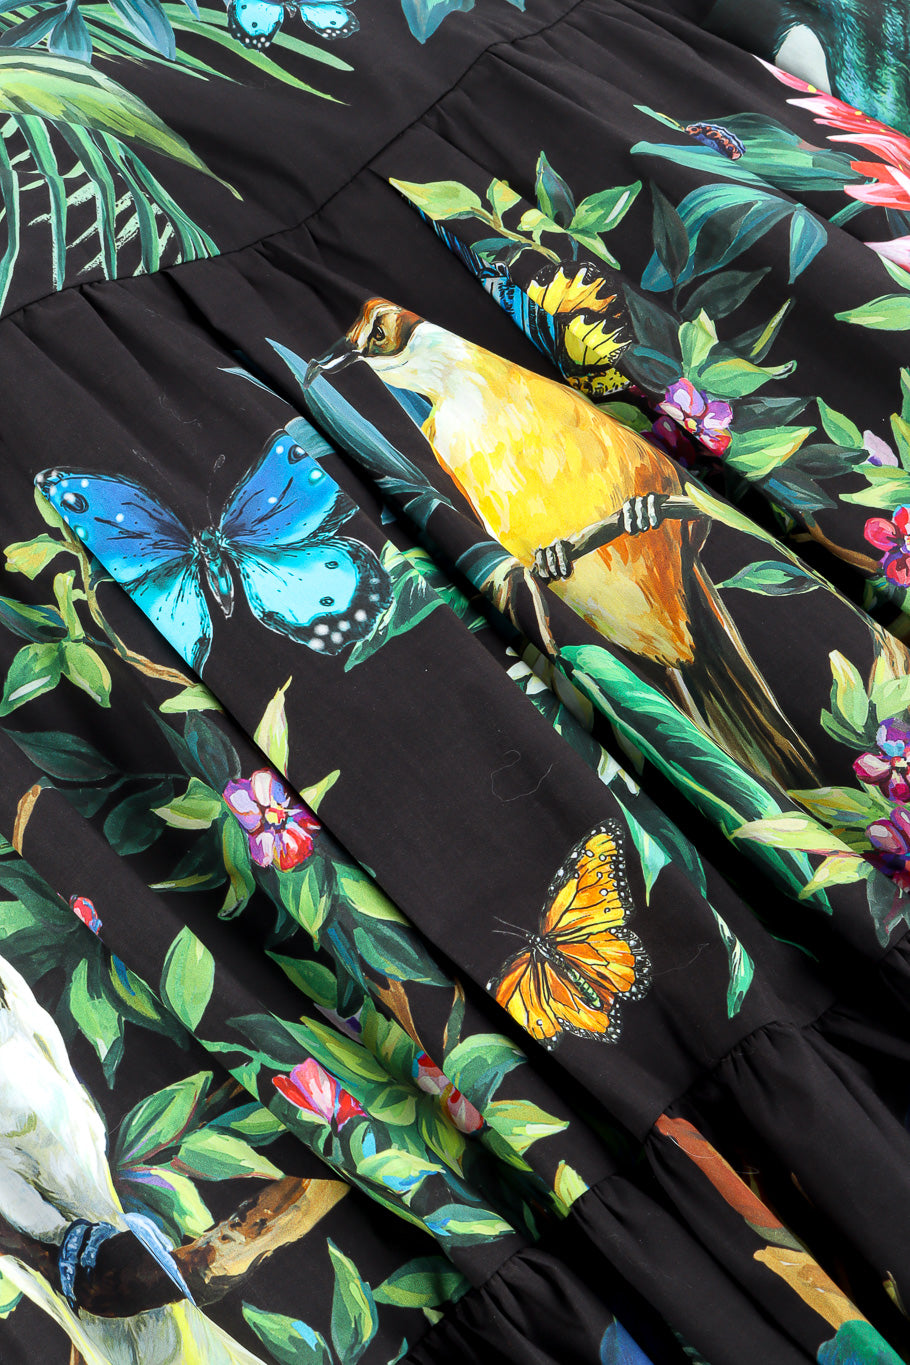 Dolce & Gabbana tiered jungle skirt fabric print details @recessla